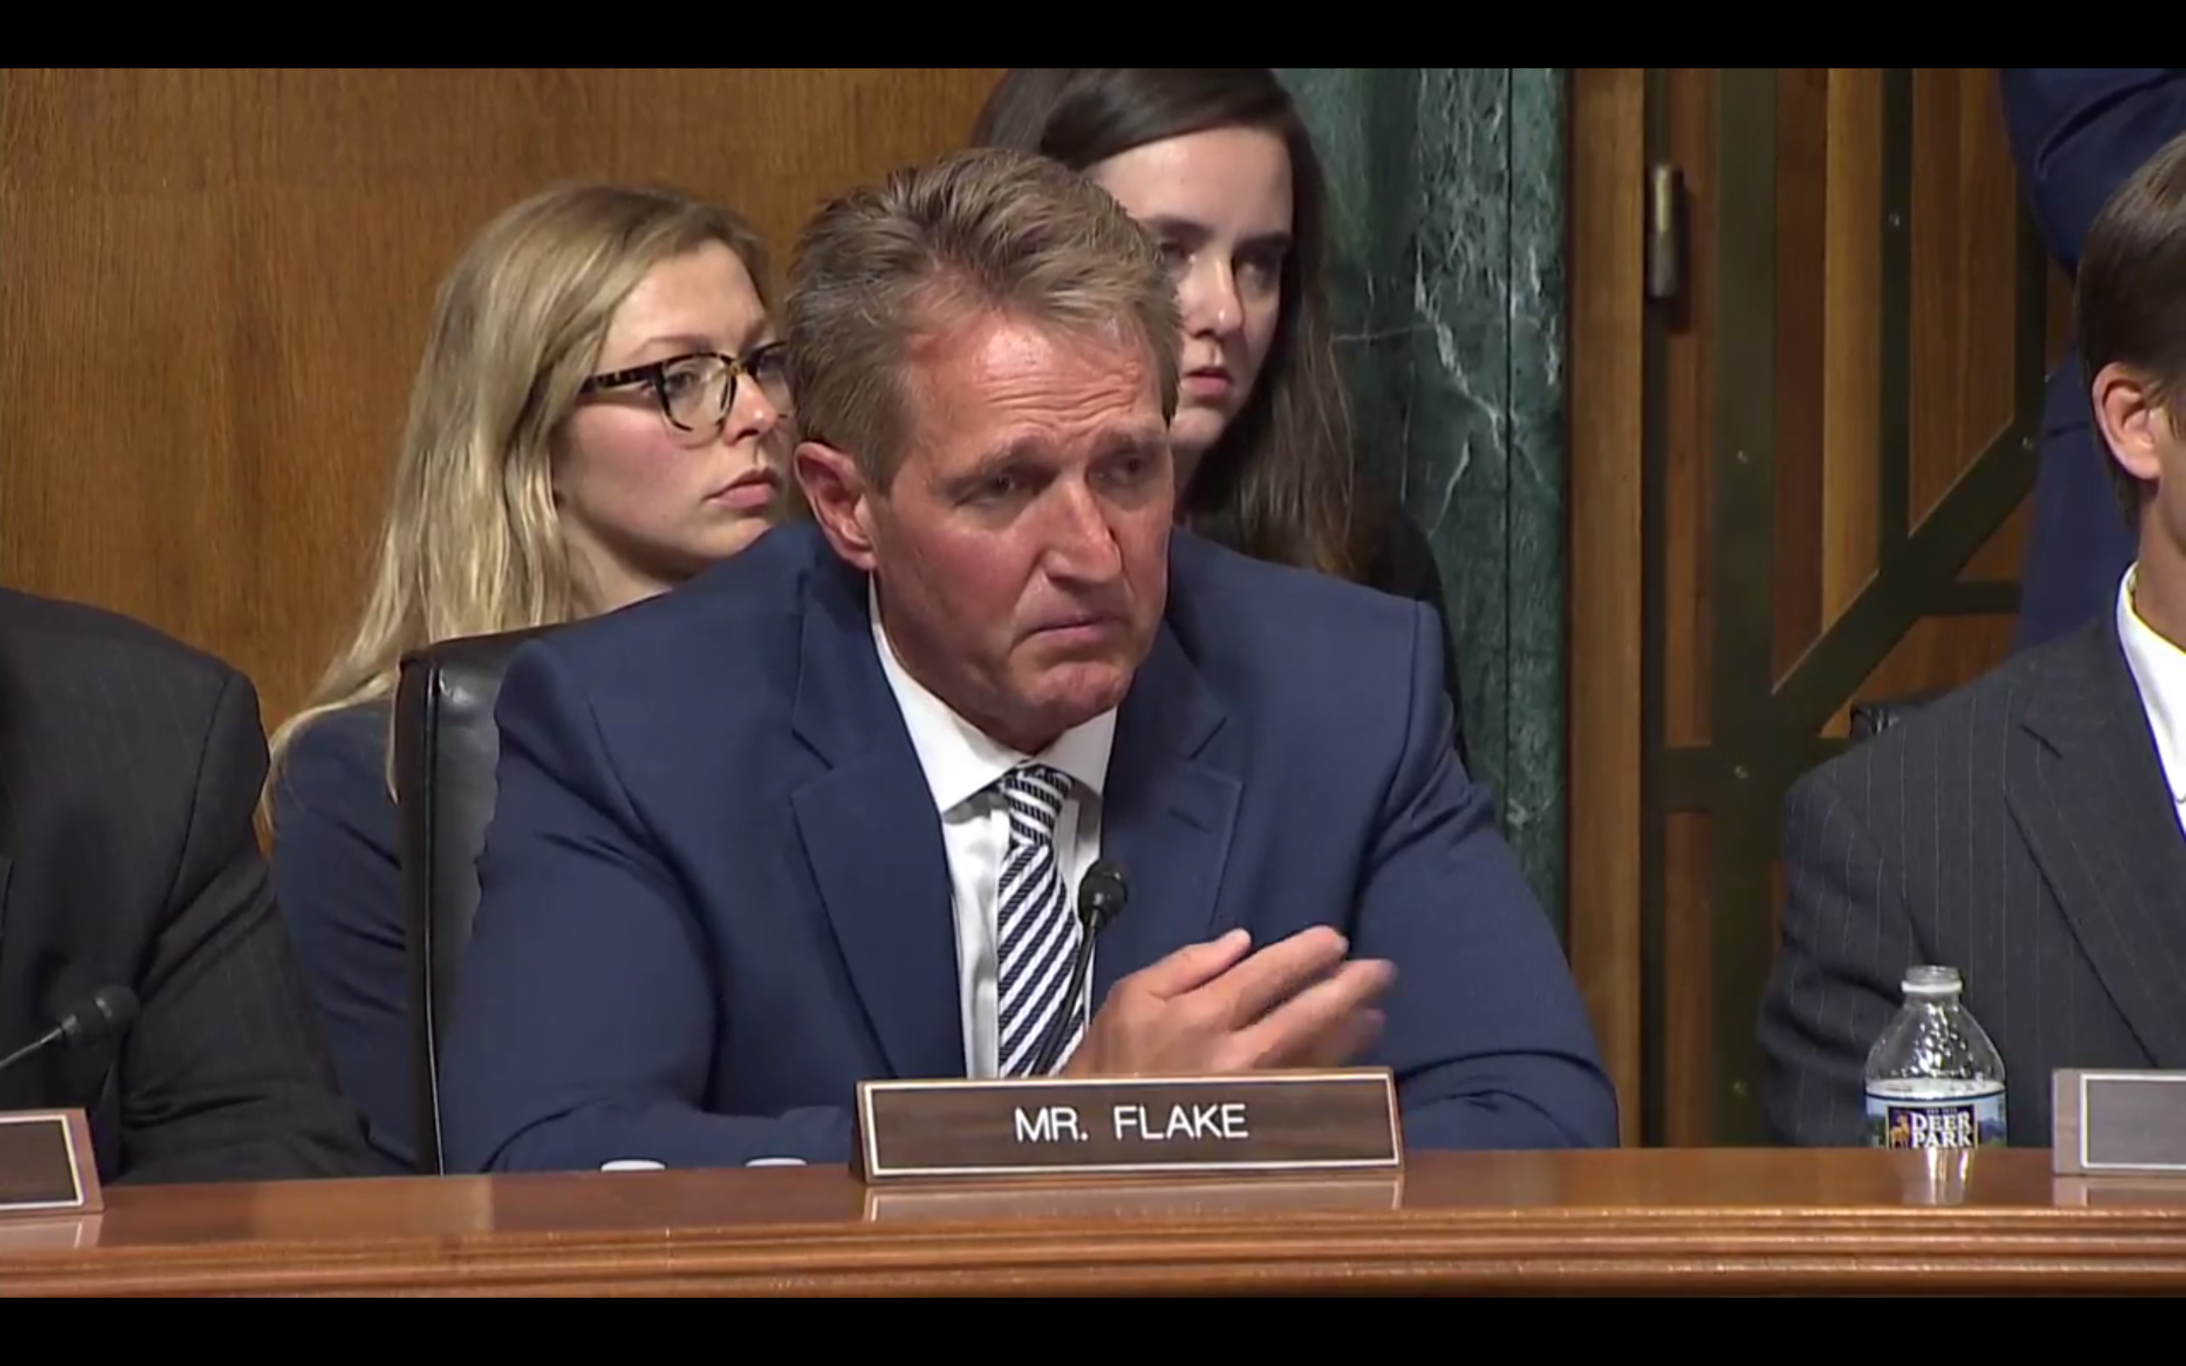 Senator Jeff Flake am Freitag im Senatsausschuss (Bild: YouTube)